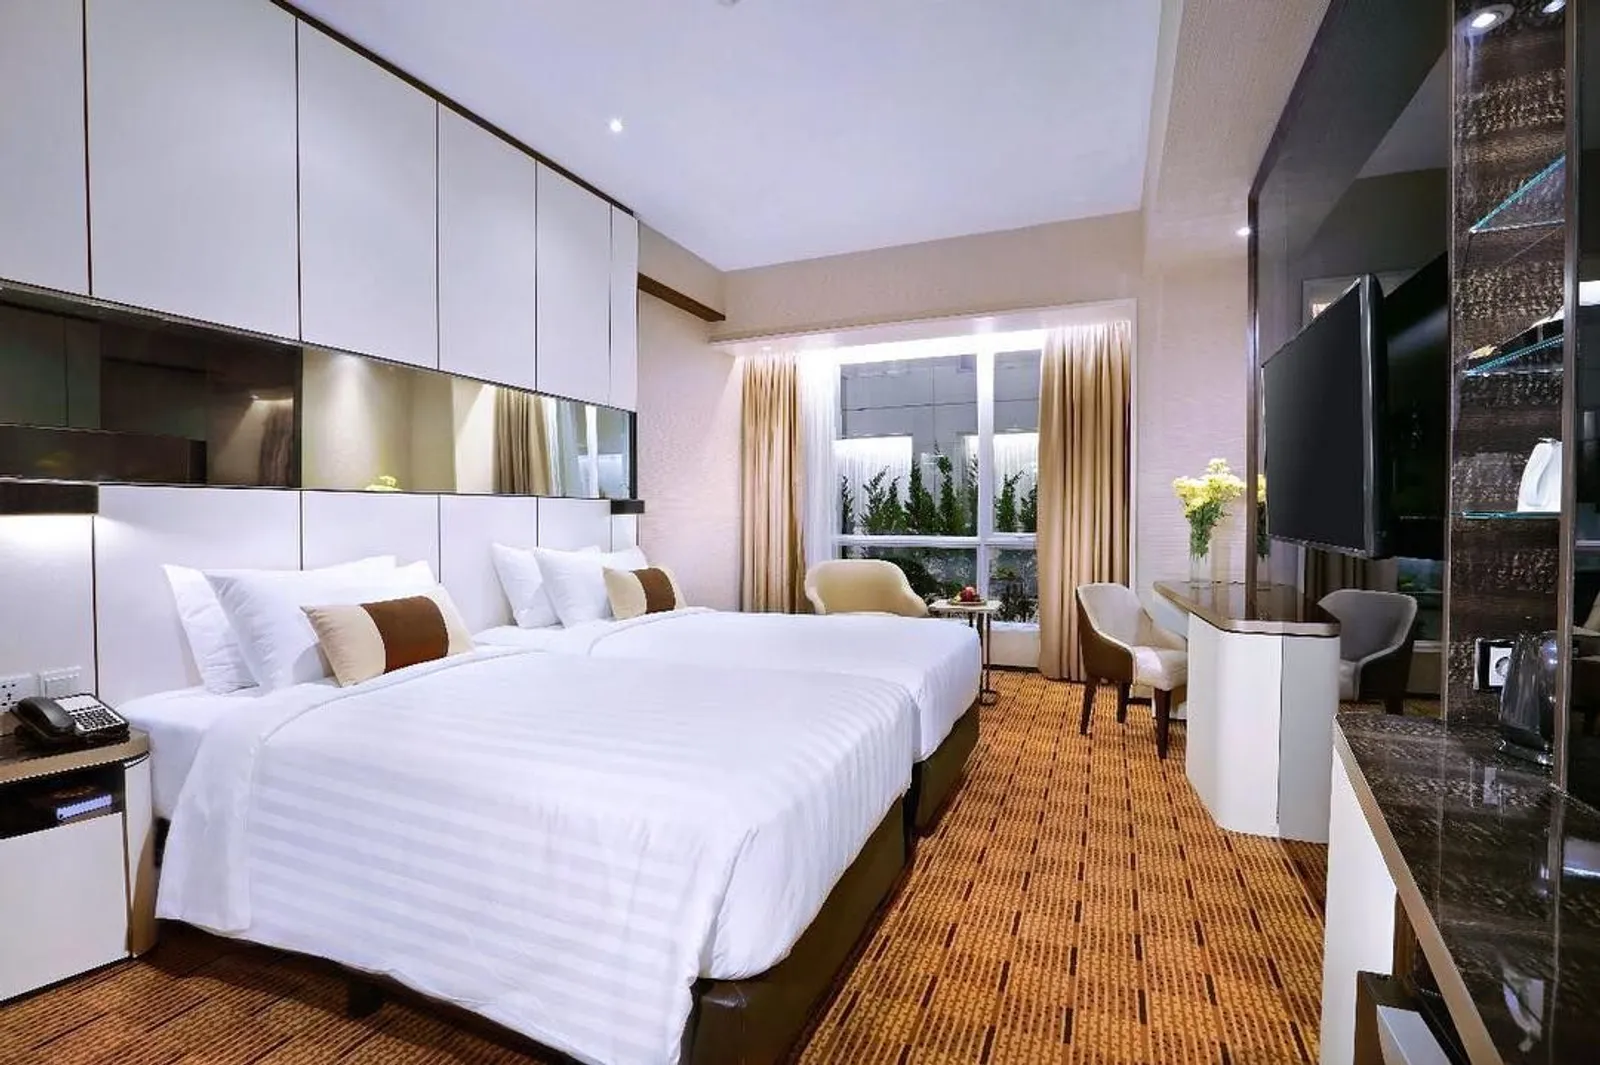 5 Rekomendasi Hotel dengan Harga di Bawah Rp700 Ribu di Palembang